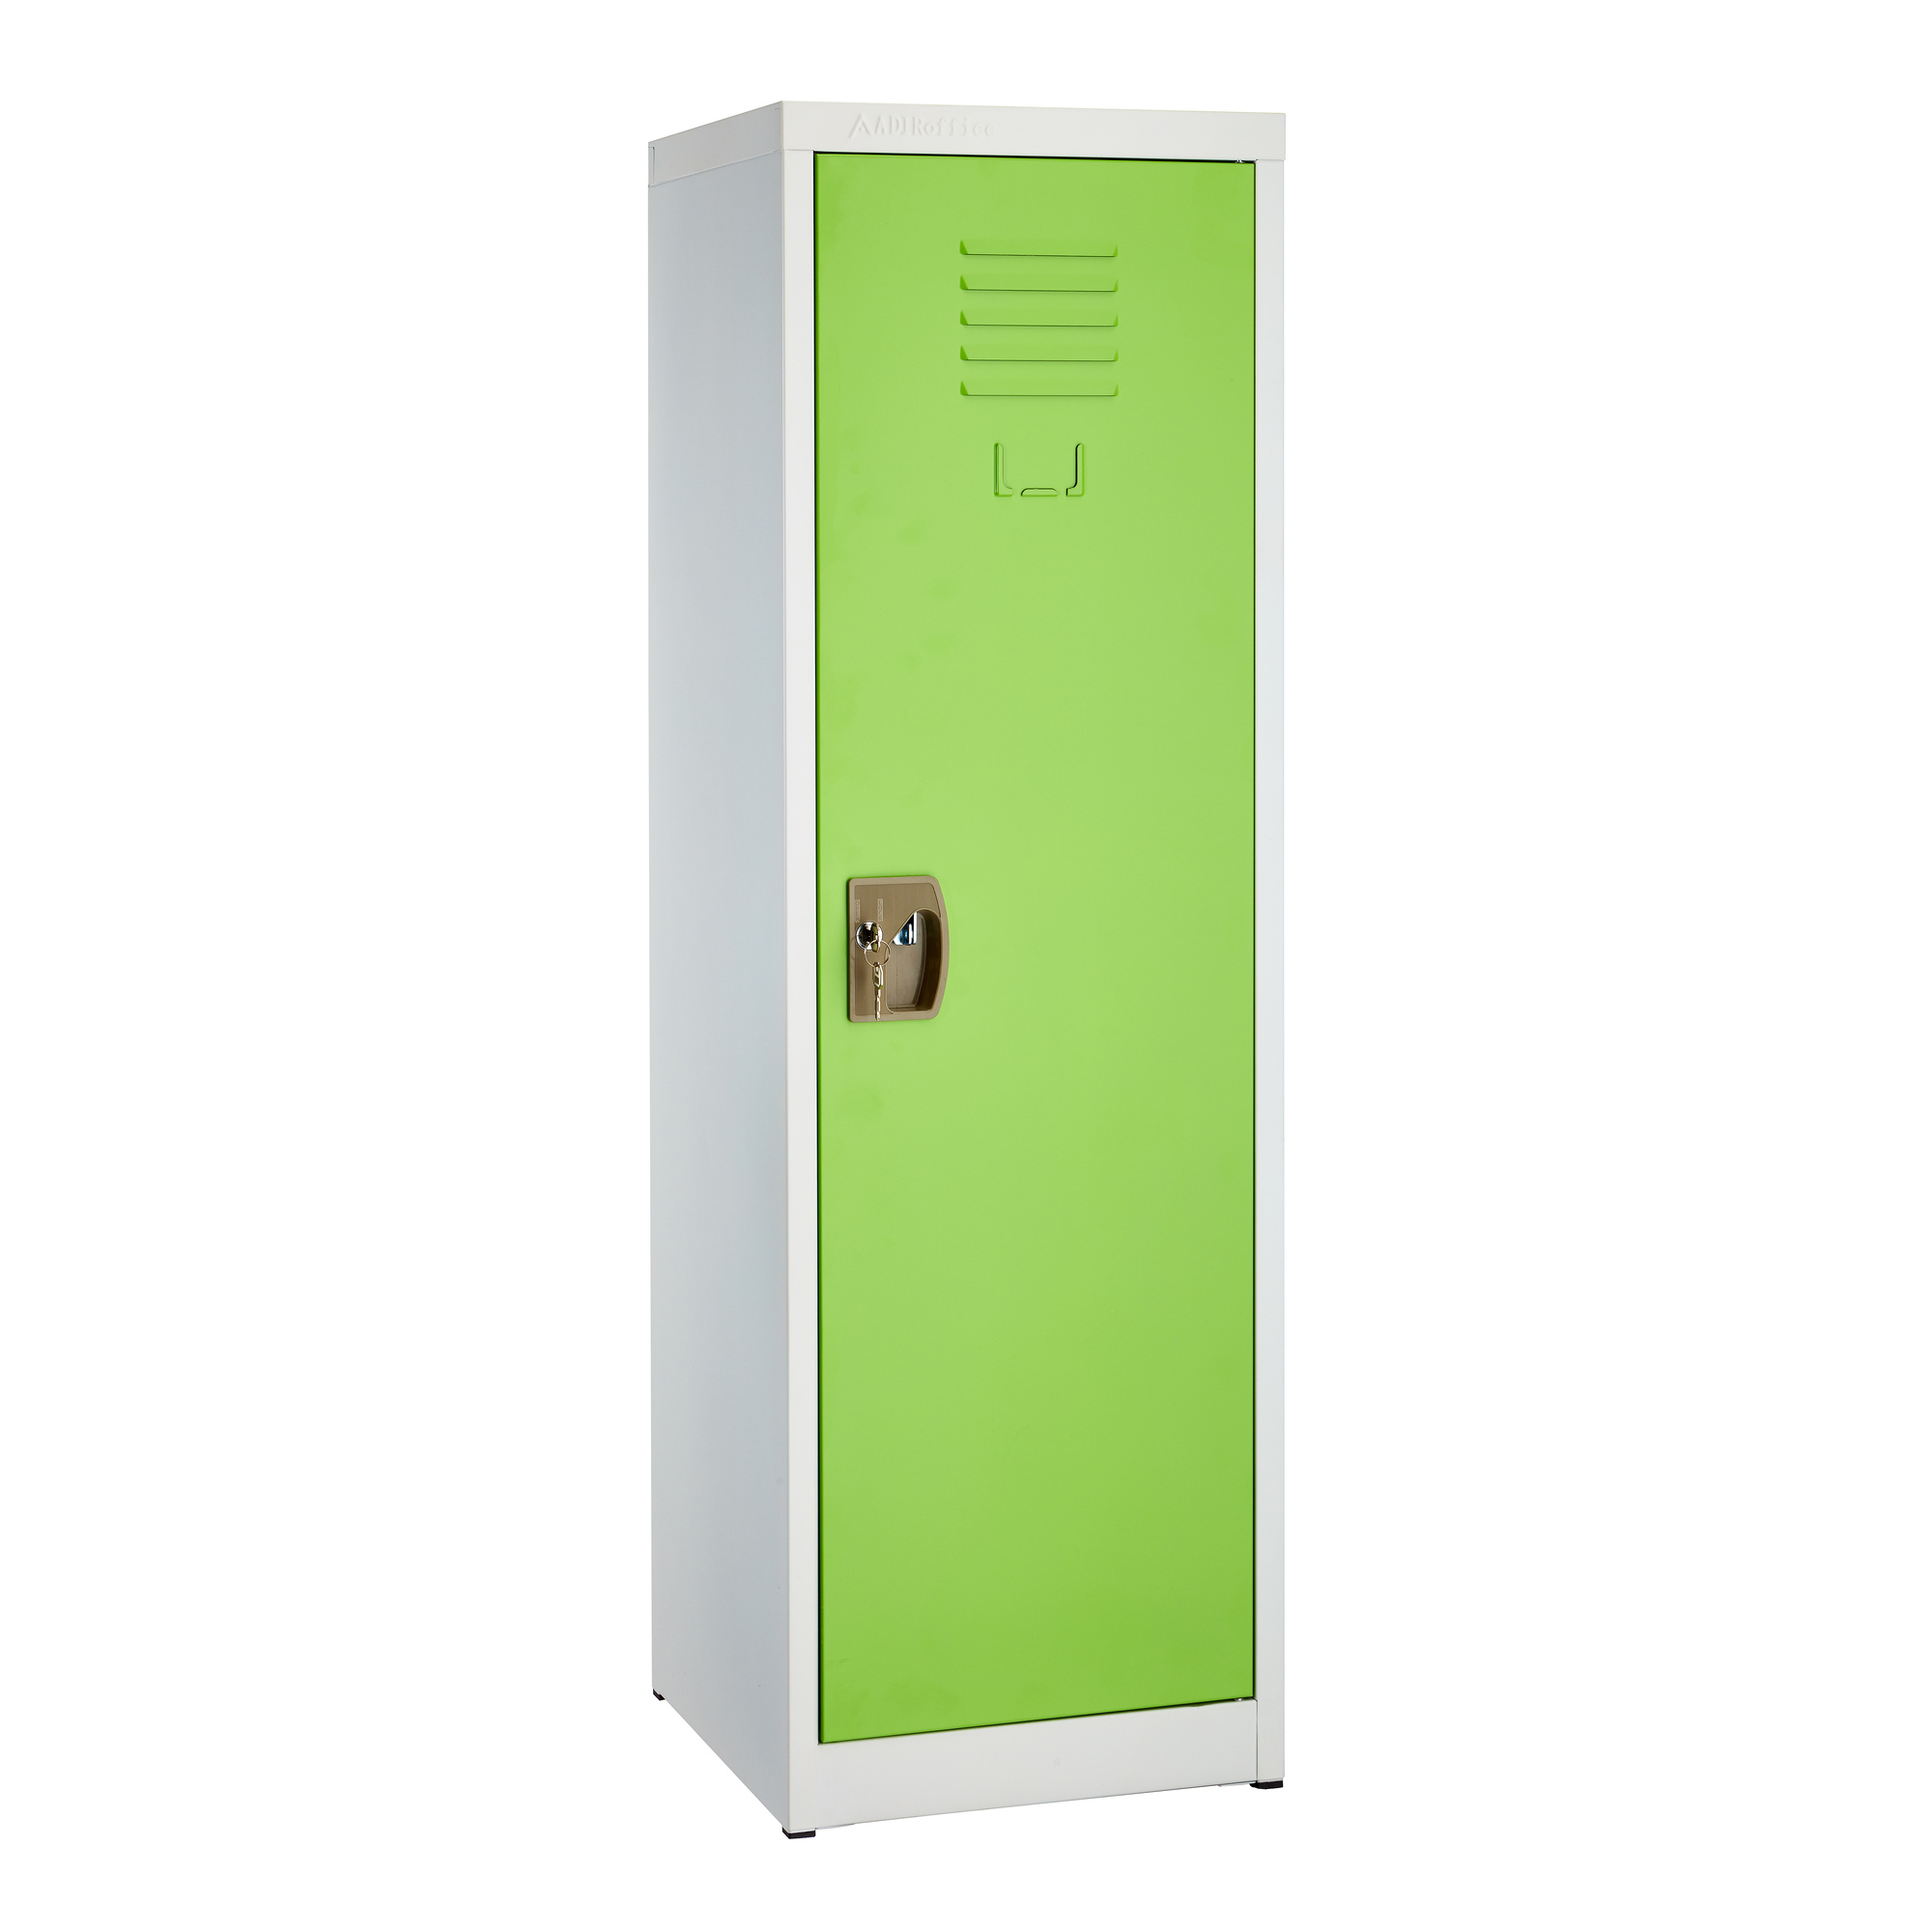 Alpine, 48ft.' Single Tier Locker for Kids - Green, Height 48 in, Width 15 in, Color Green, Model ADI629-01-GRN